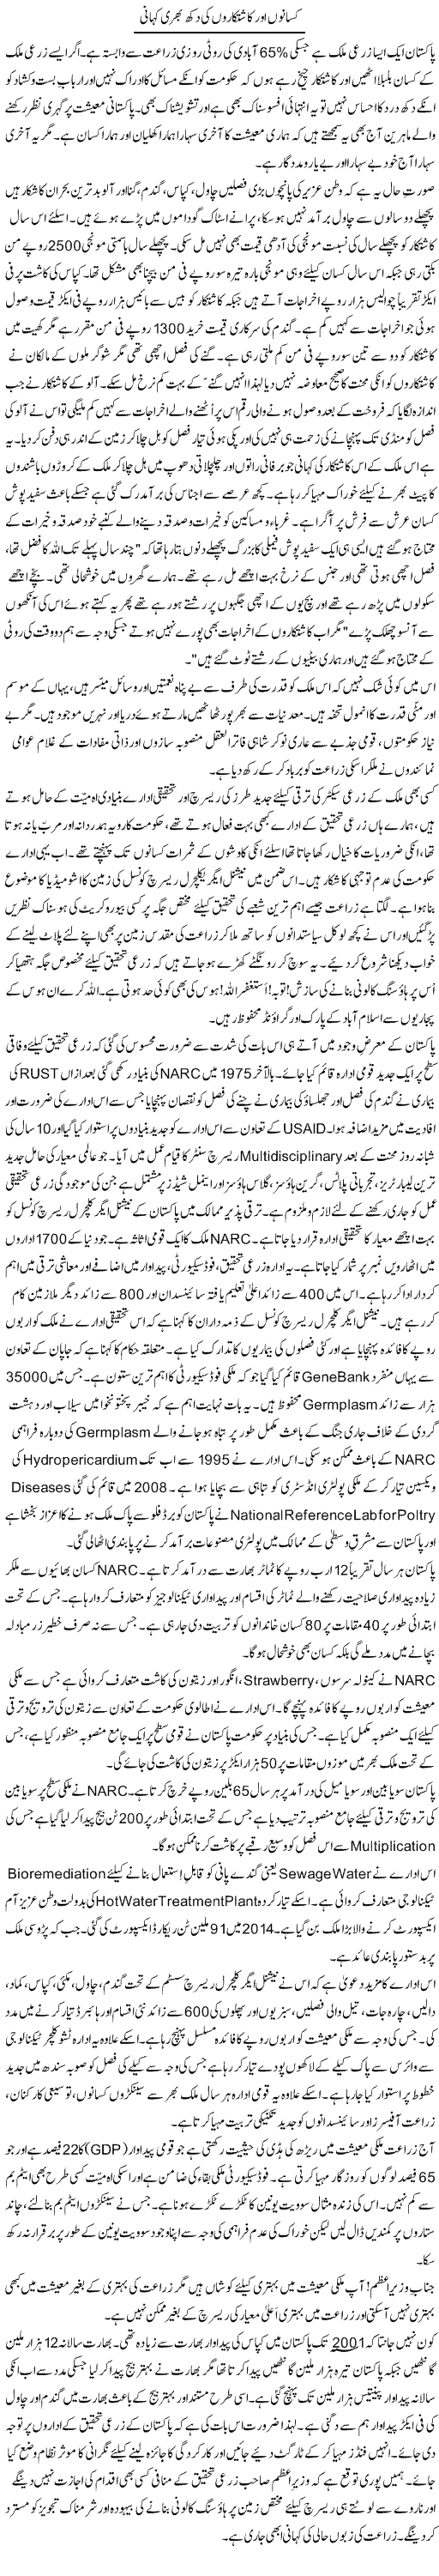 Kisano Aur Kashtkaron Ki Dukh Bhari Kahani | Zulfiqar Ahmed Cheema | Daily Urdu Columns